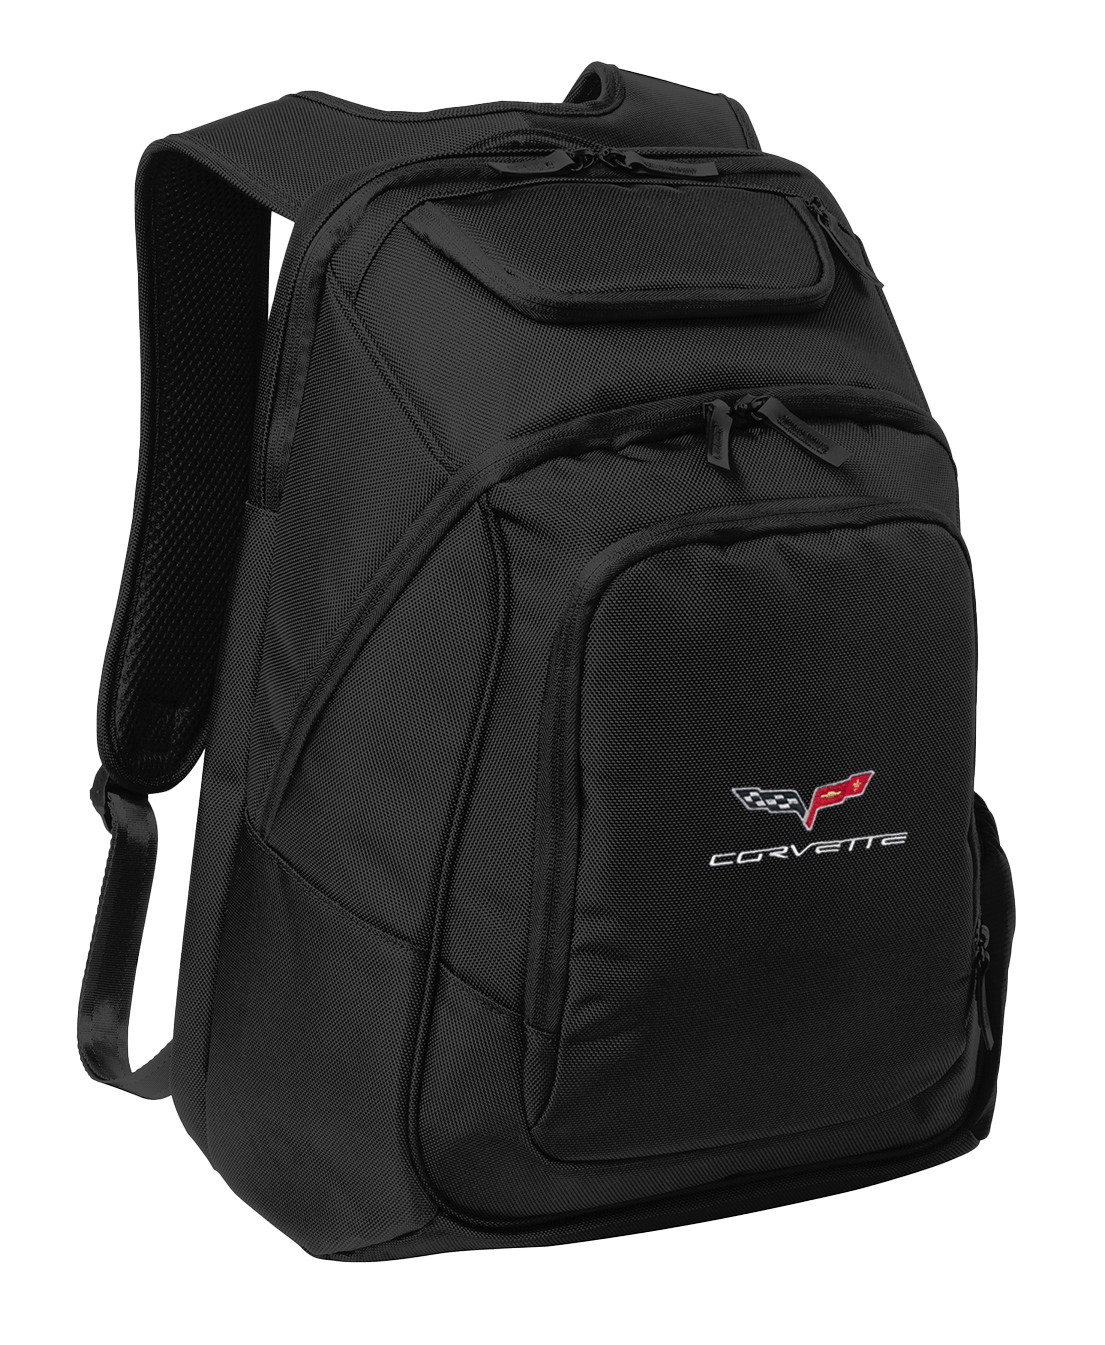 c6-corvette-embroidered-backpack-cvr90010106-corvette-store-online